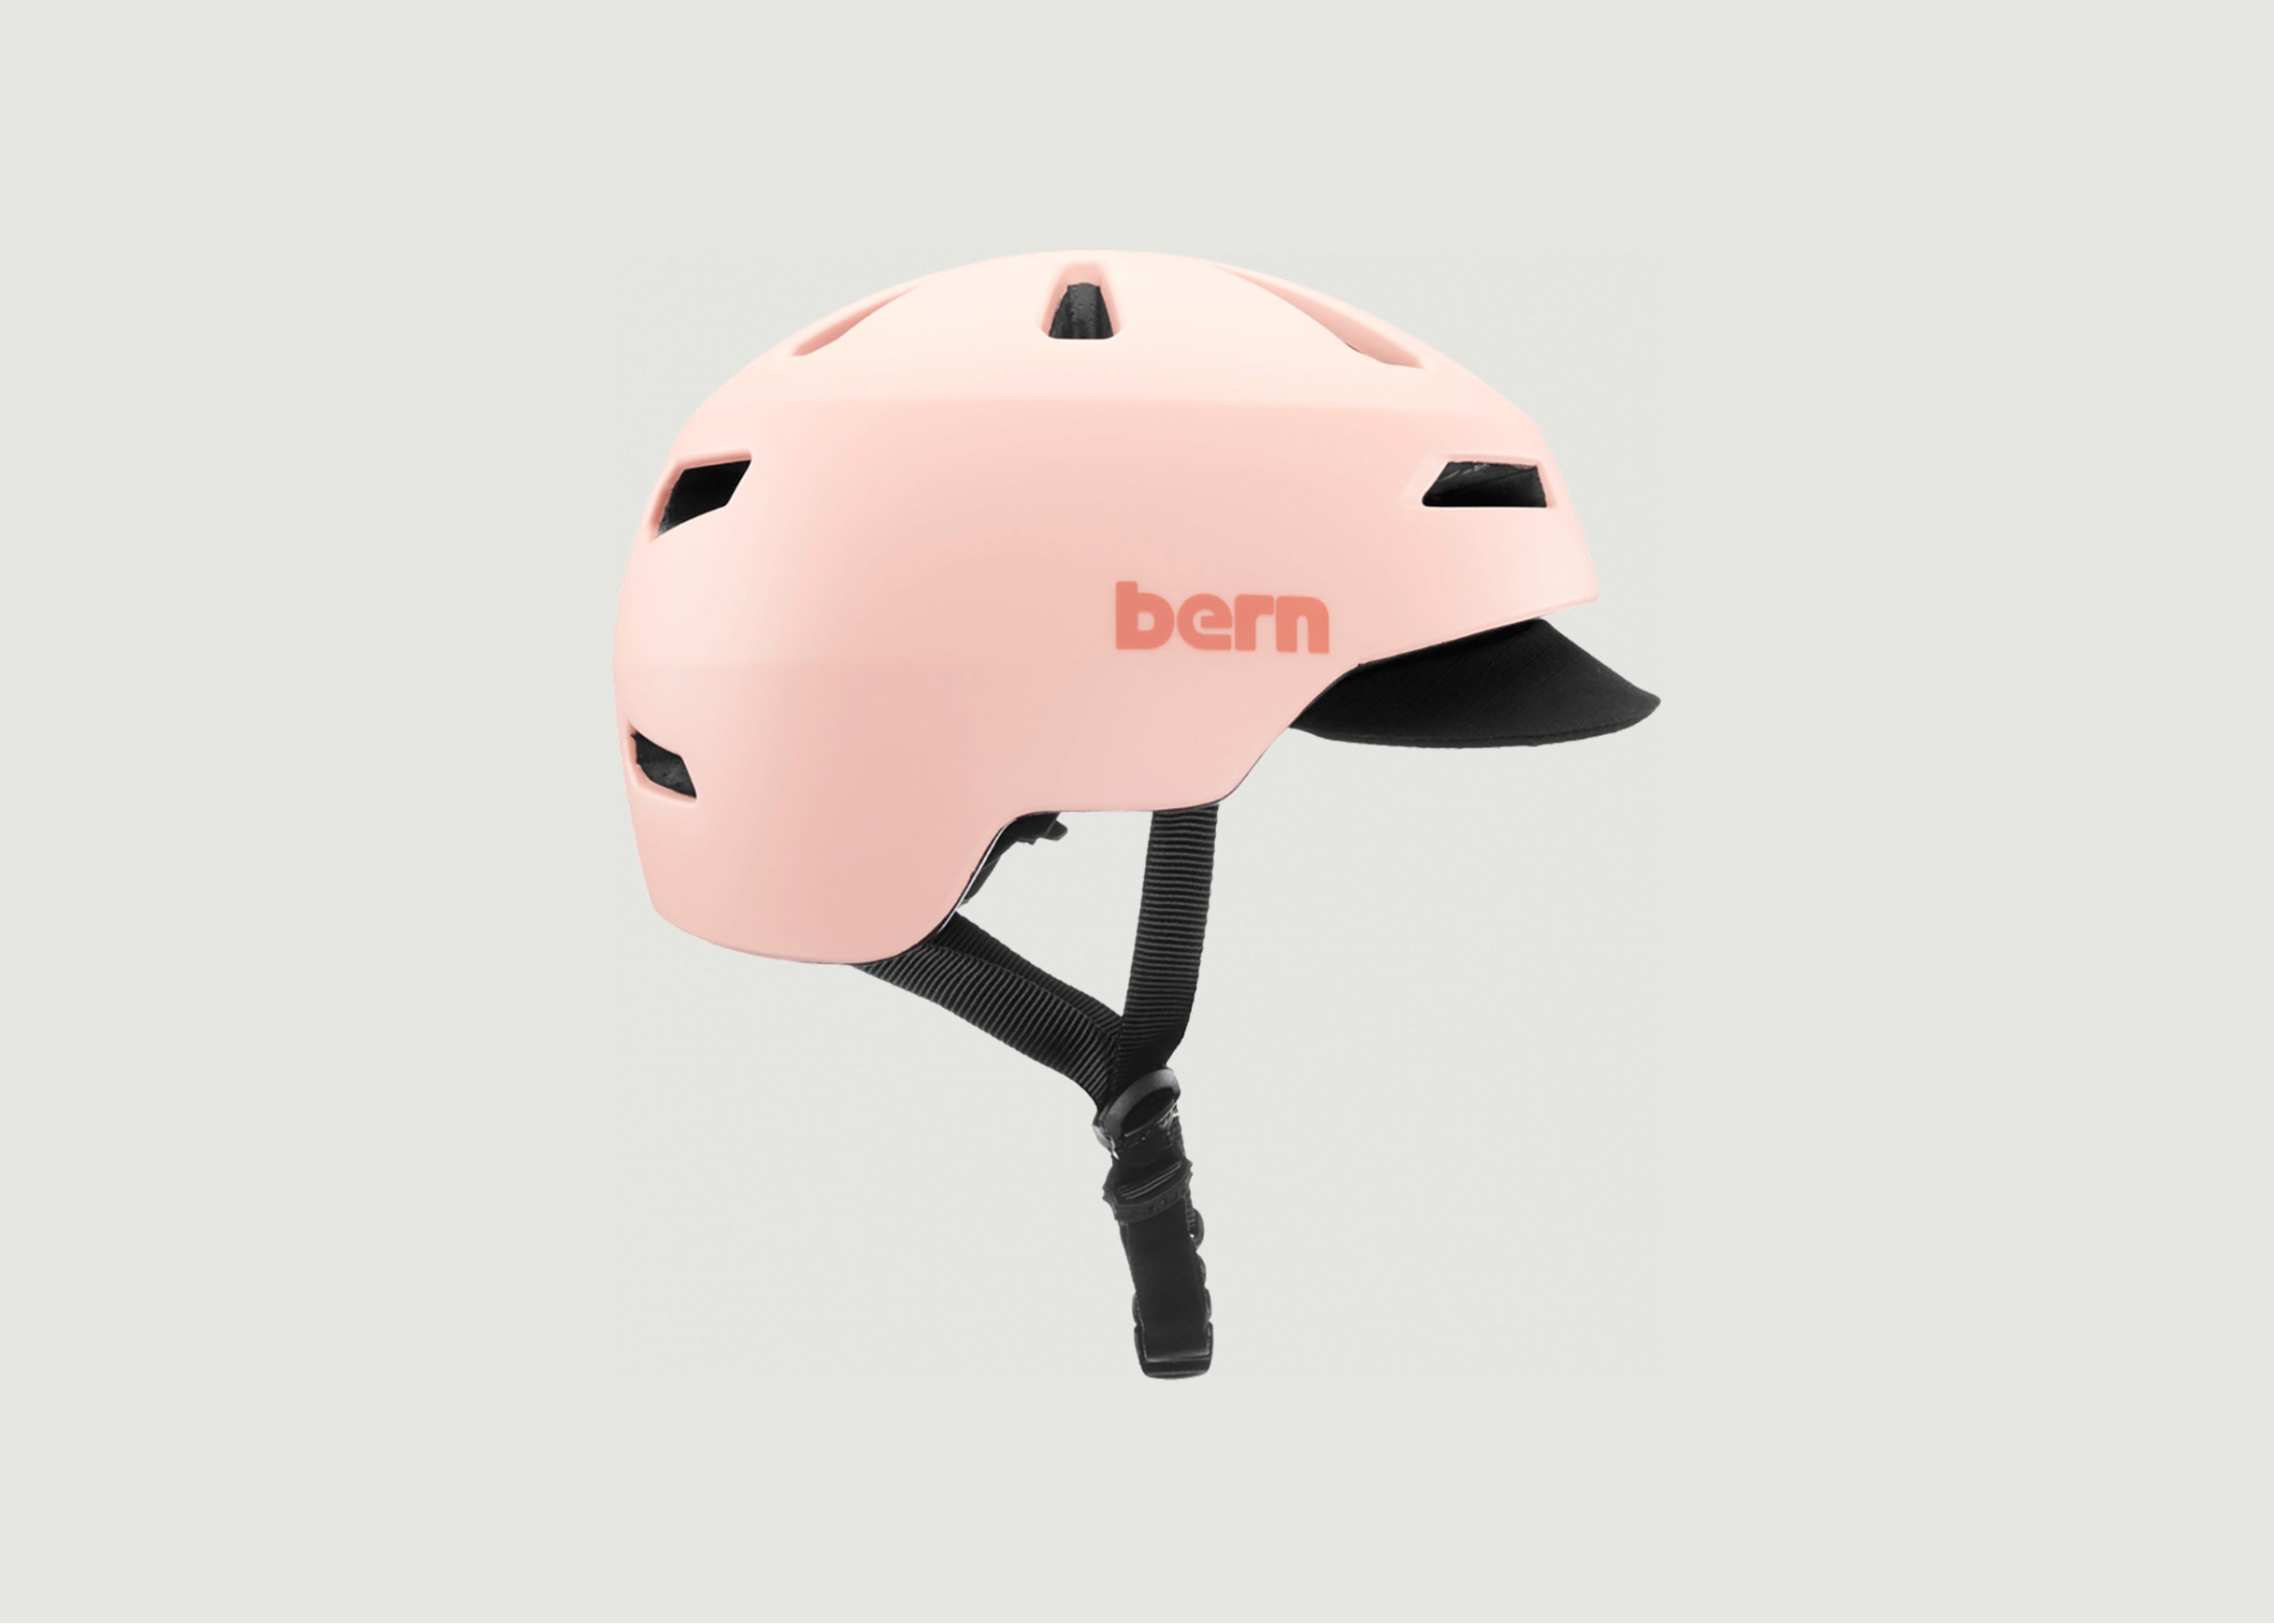 Brentwood 2.0 Bicycle Helmet - Bern